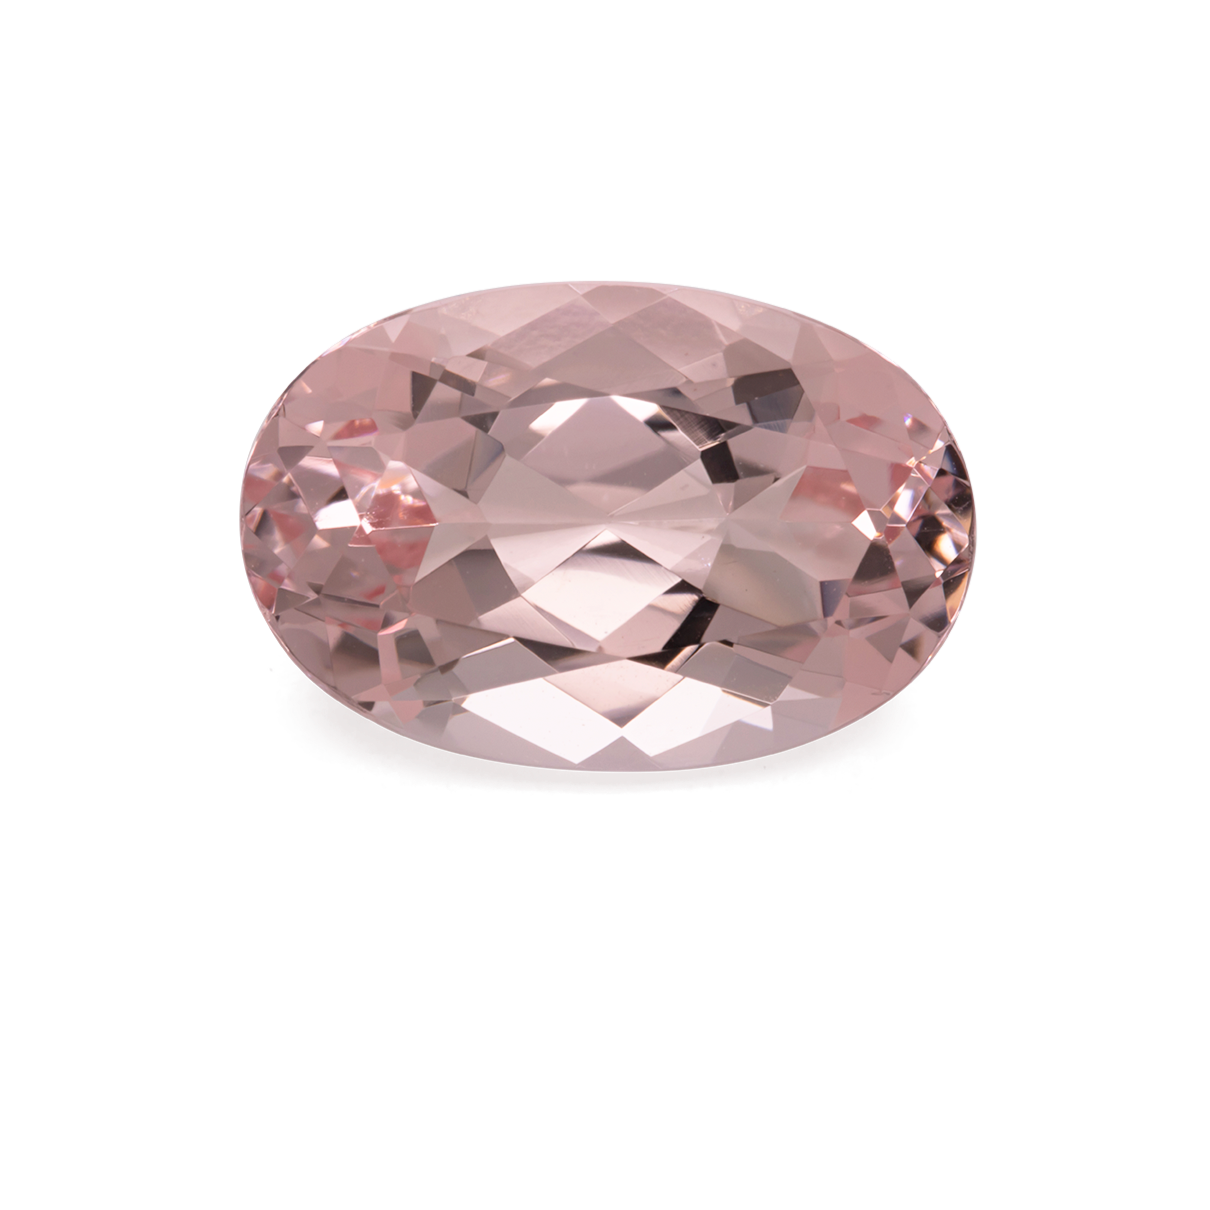 Morganite - pink, oval, 12.2x8.1 mm, 3.22 cts, No. MO31008